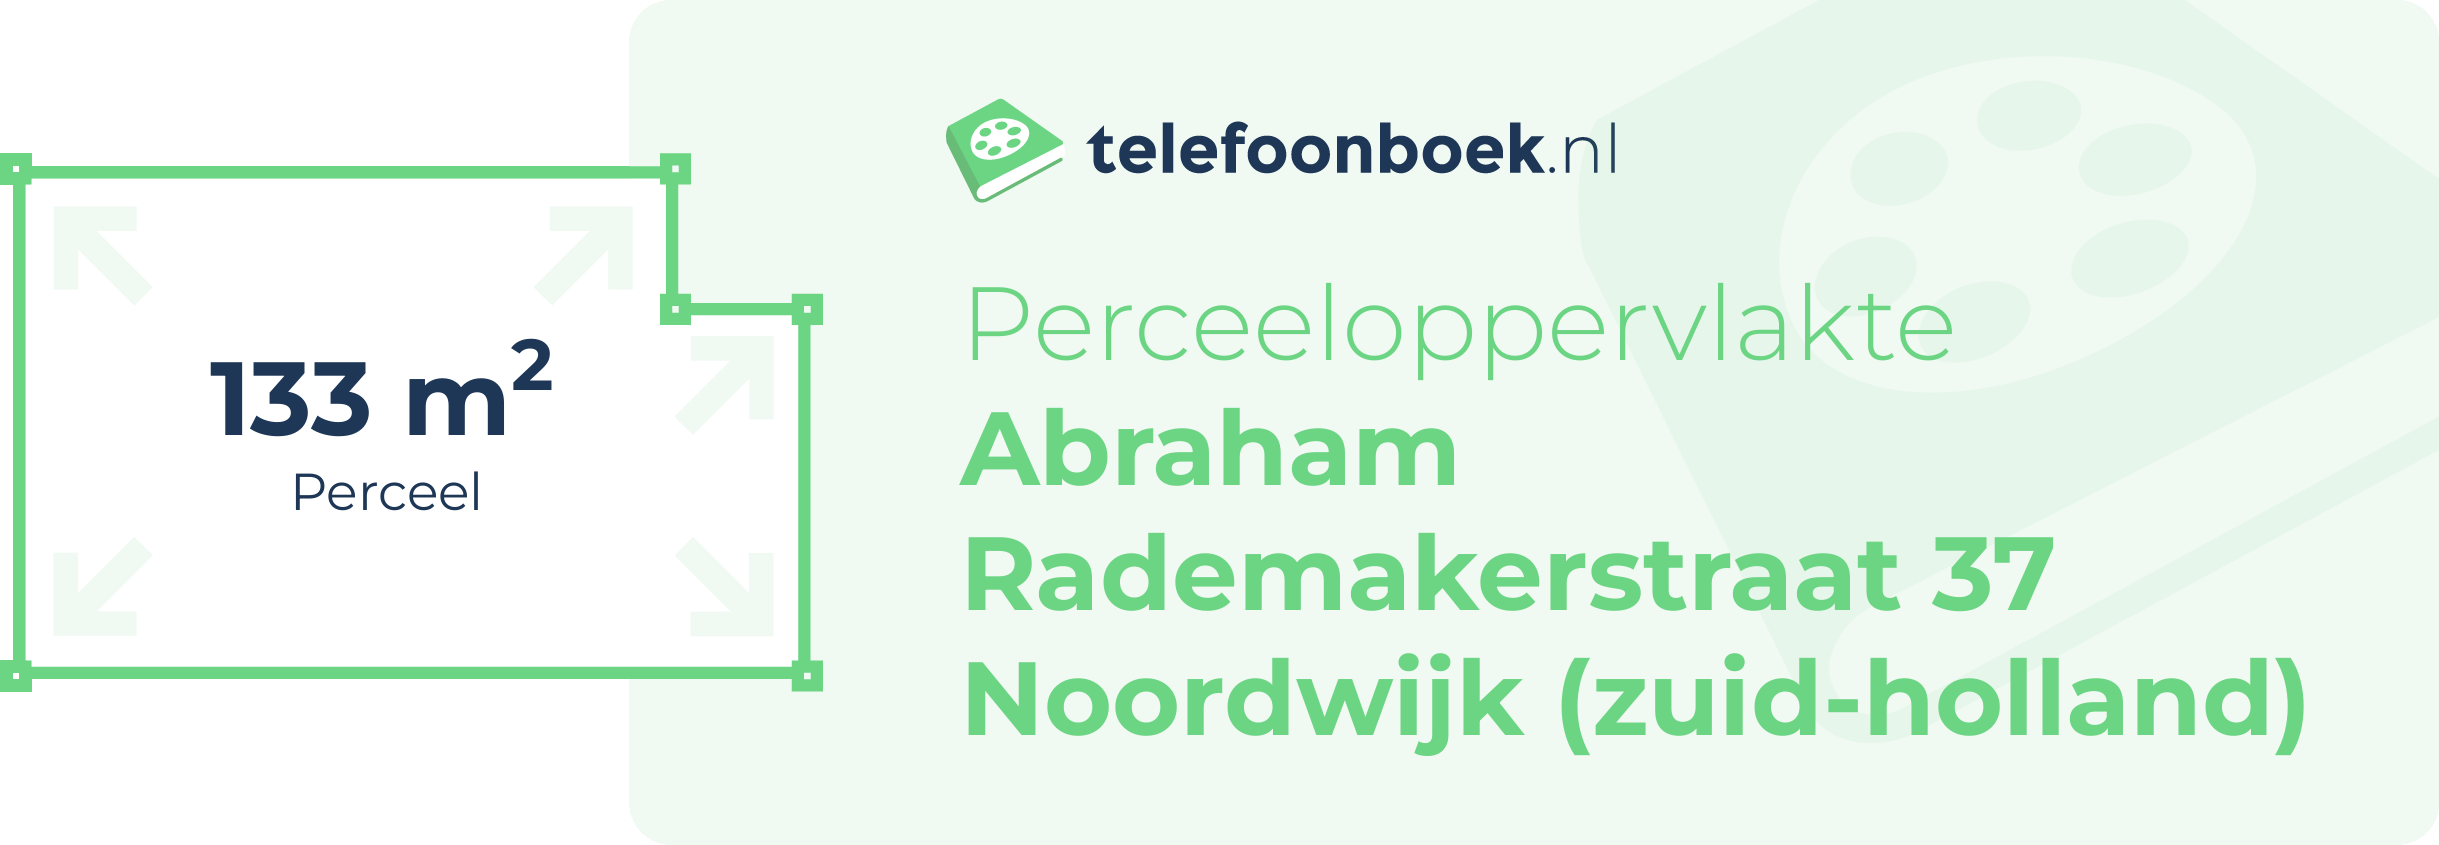 Perceeloppervlakte Abraham Rademakerstraat 37 Noordwijk (Zuid-Holland)